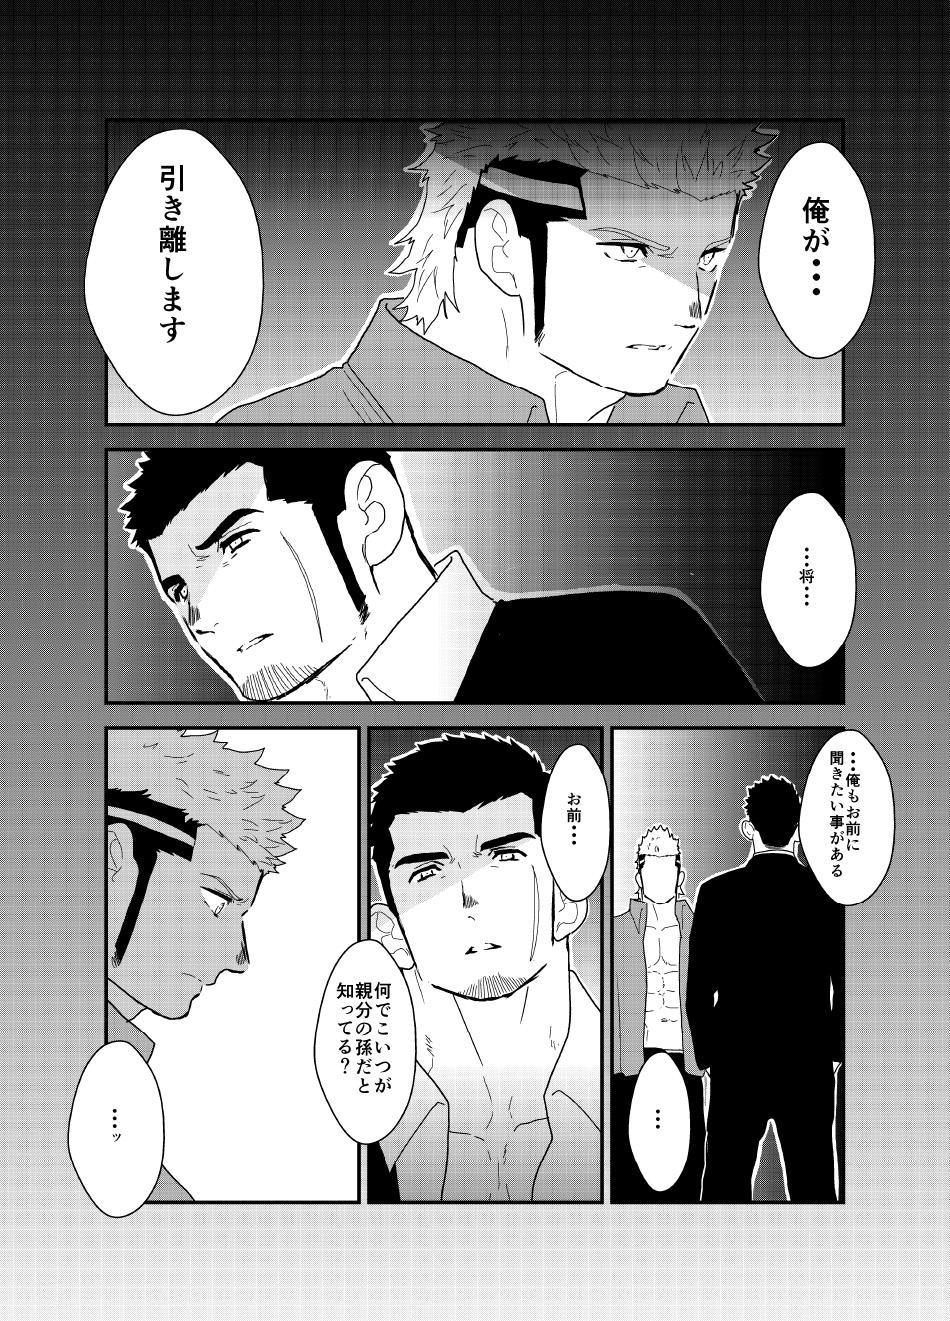 Moshimo yakuza ga 1-ri etchi shite iru tokoro o mi raretara. | What if a Yakuza Got Caught Pleasuring Himself? 42